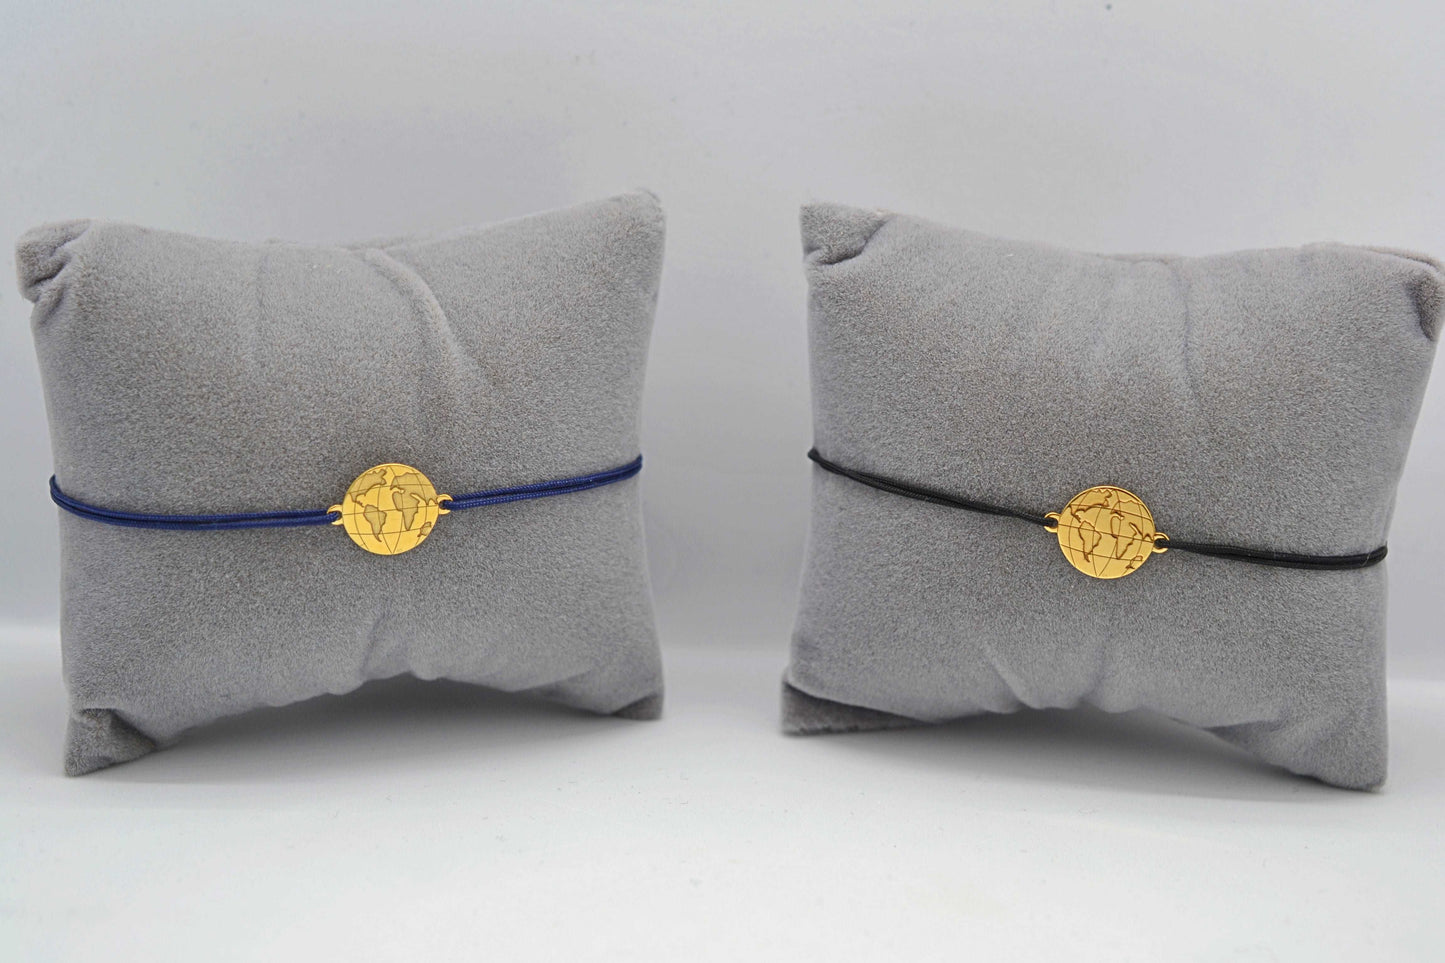 Zwei goldene Weltkarte Armbänder eins mit blauem und eins mit schwarzem Band jeweils auf einem grauen Schmuckkissen